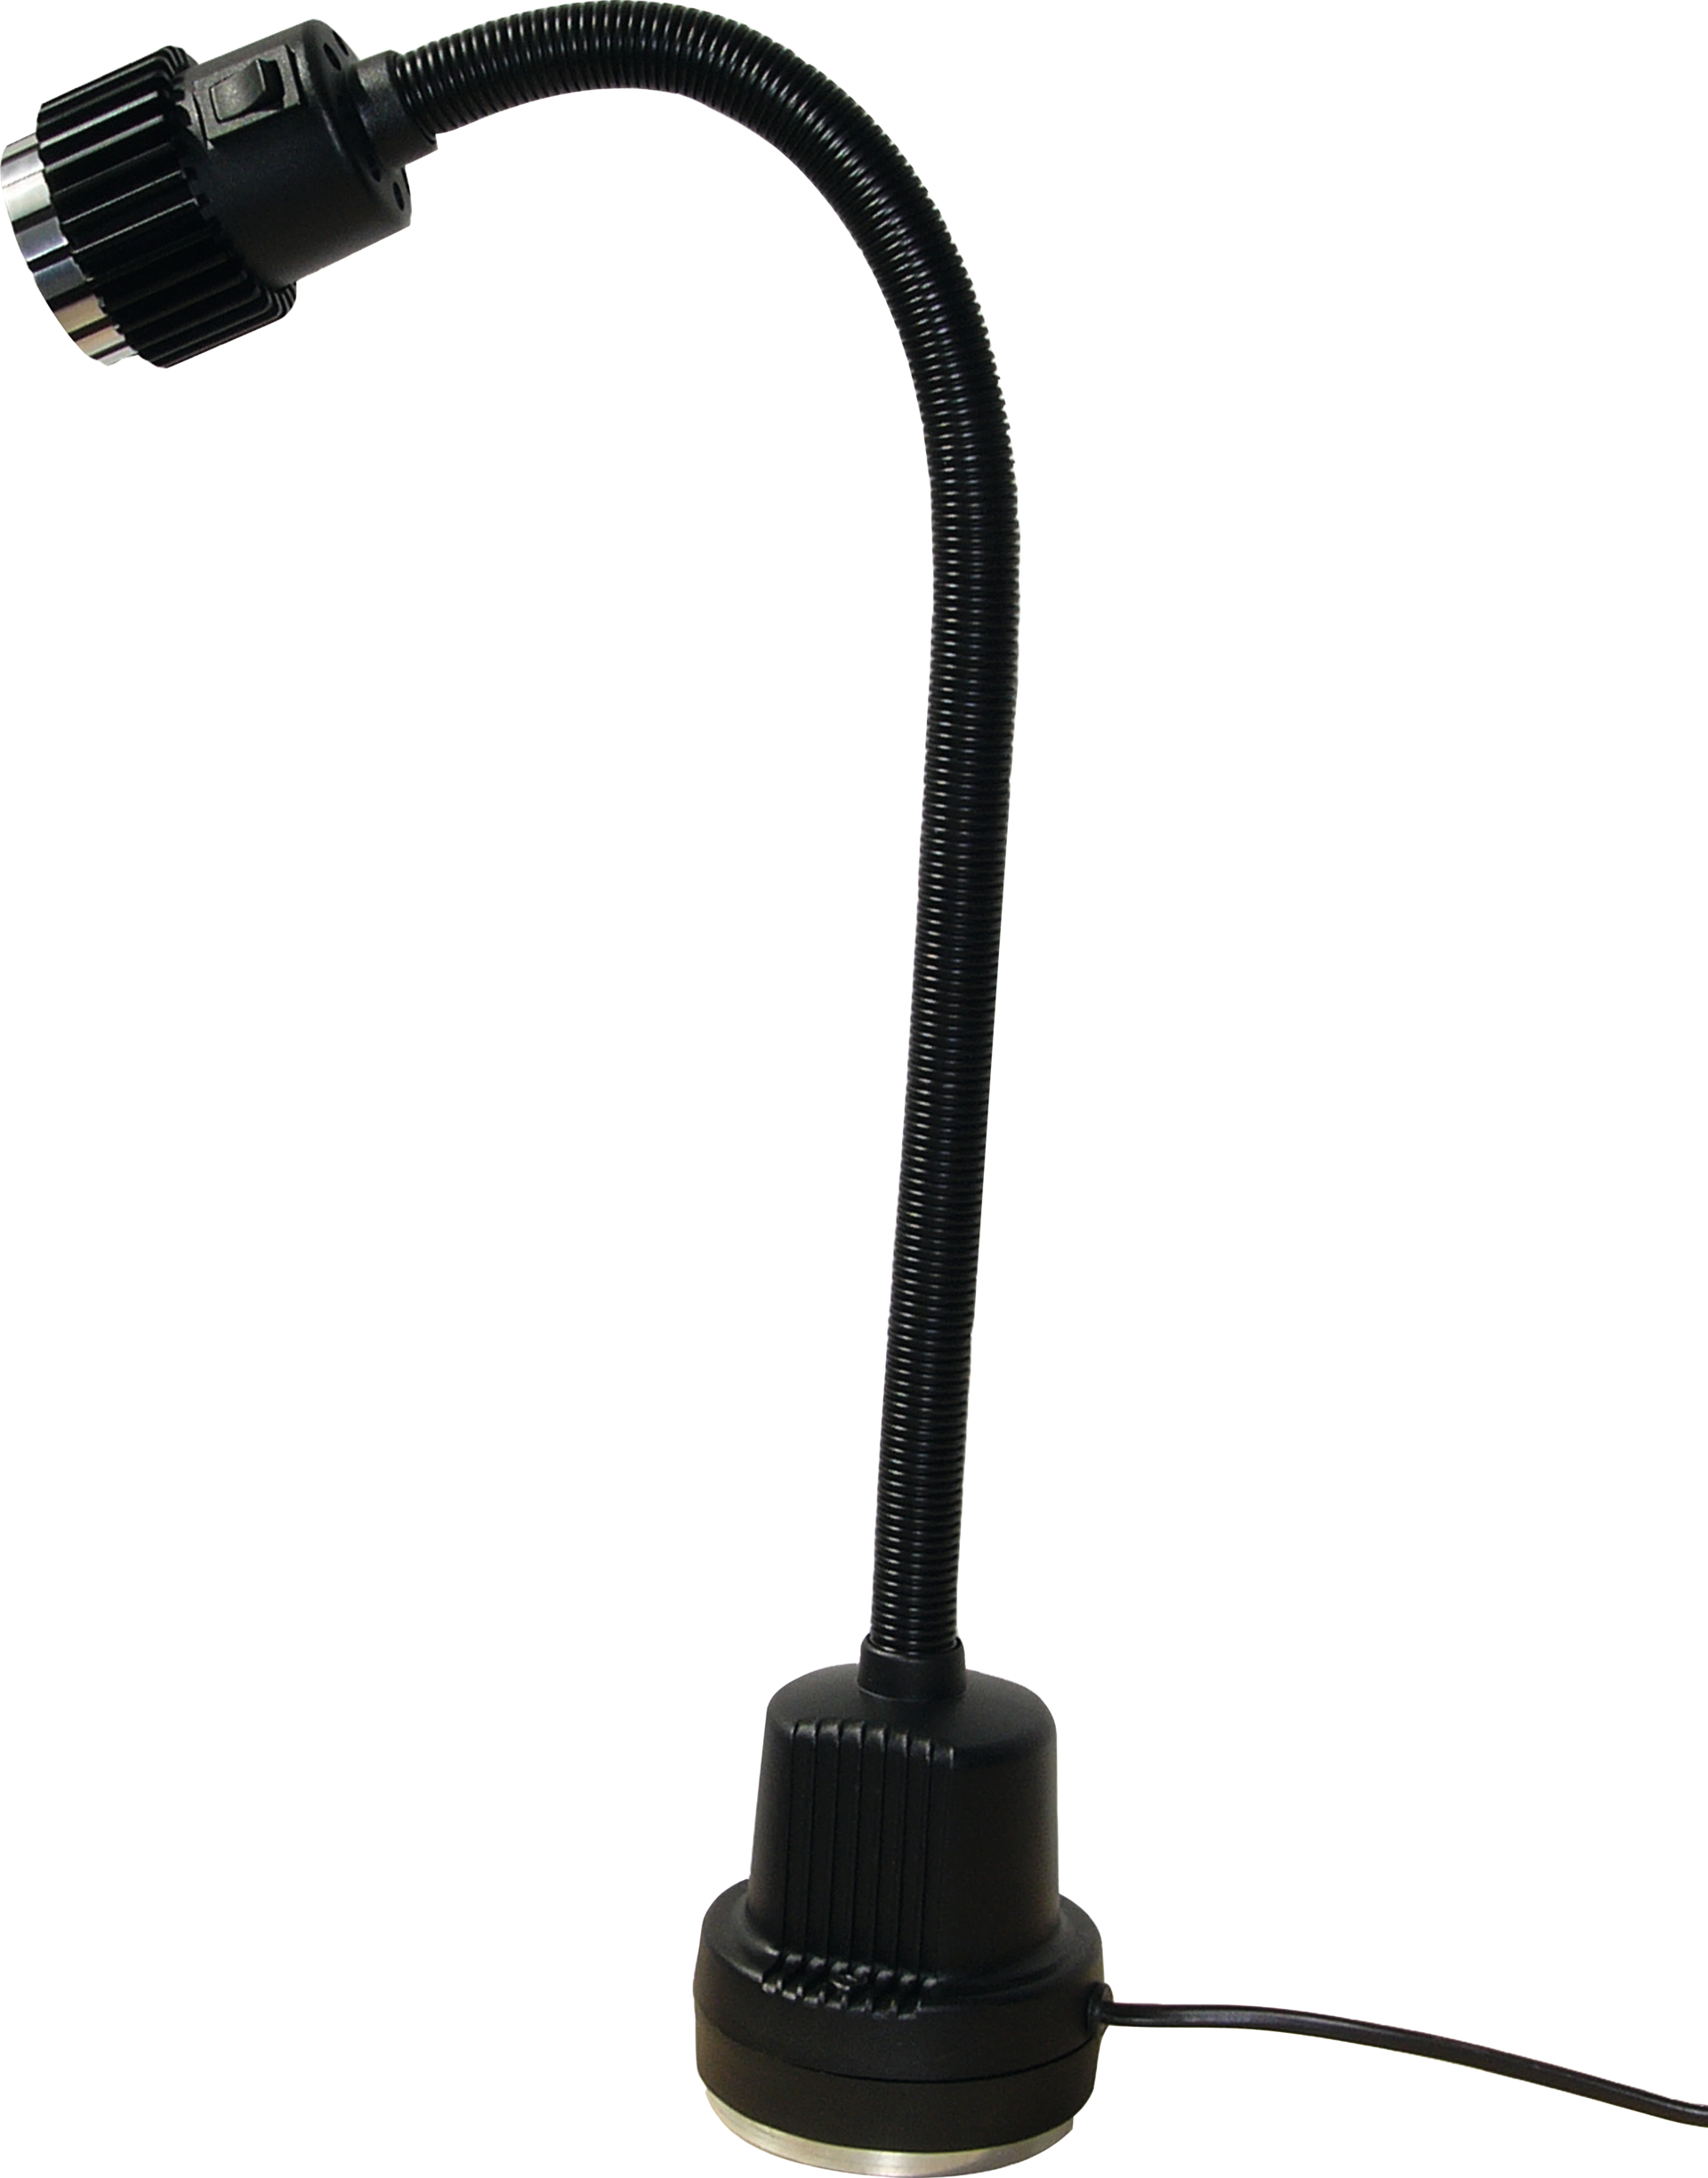 Maschinenlampe LED mit Schraubklemme L420mm 1,6m Kabel 230V 3W